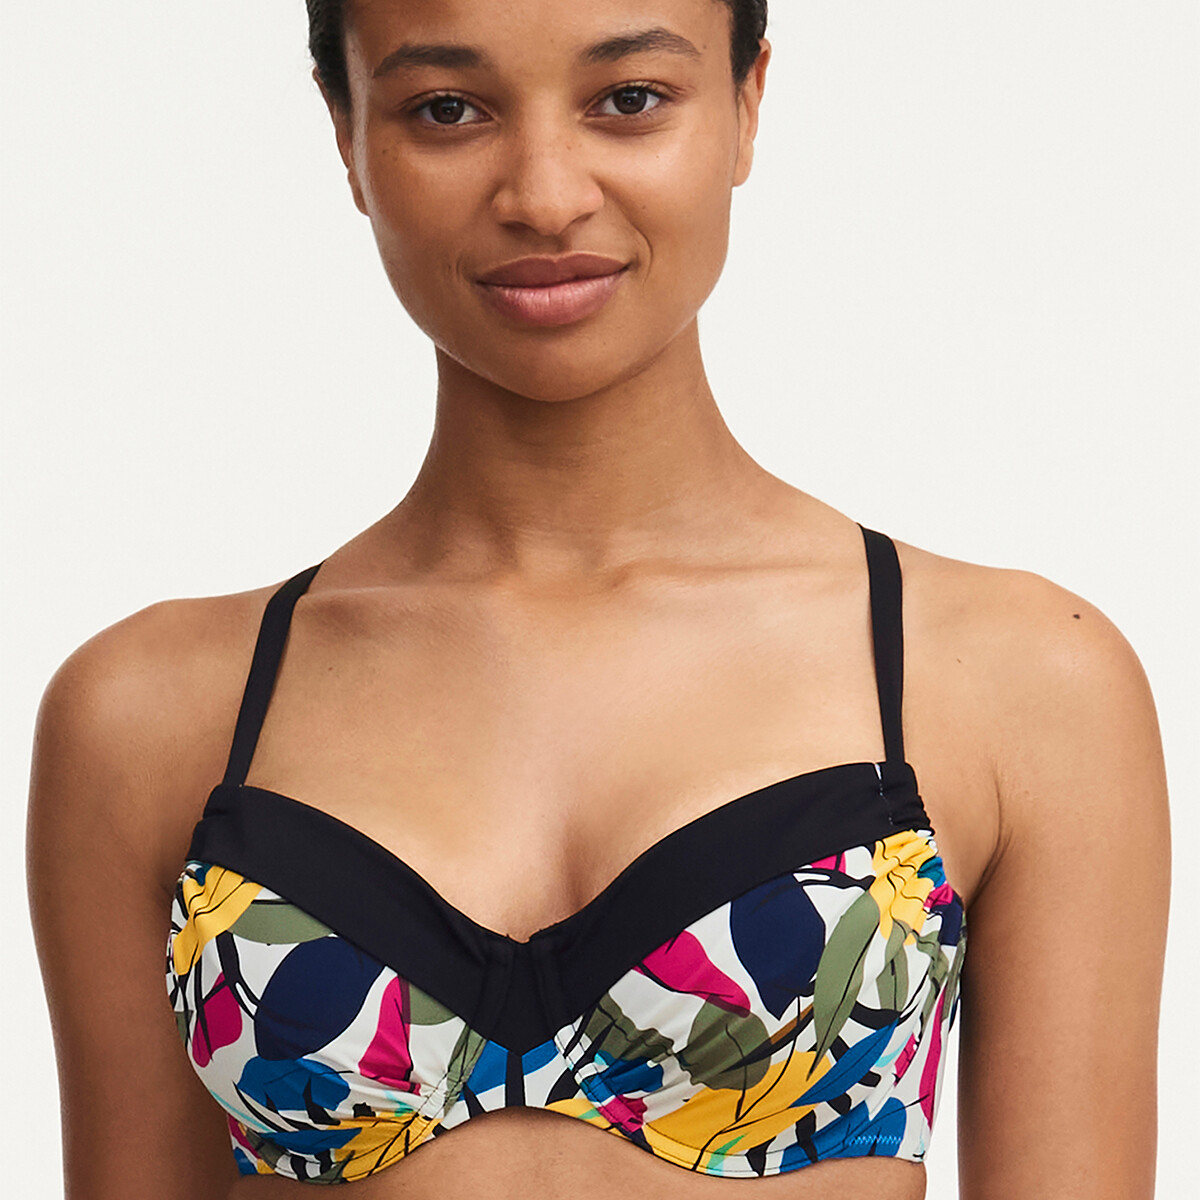 Femilet Honduras Bikini Top, Farve: Multicolor Leaves, Størrelse: 85E, Dame